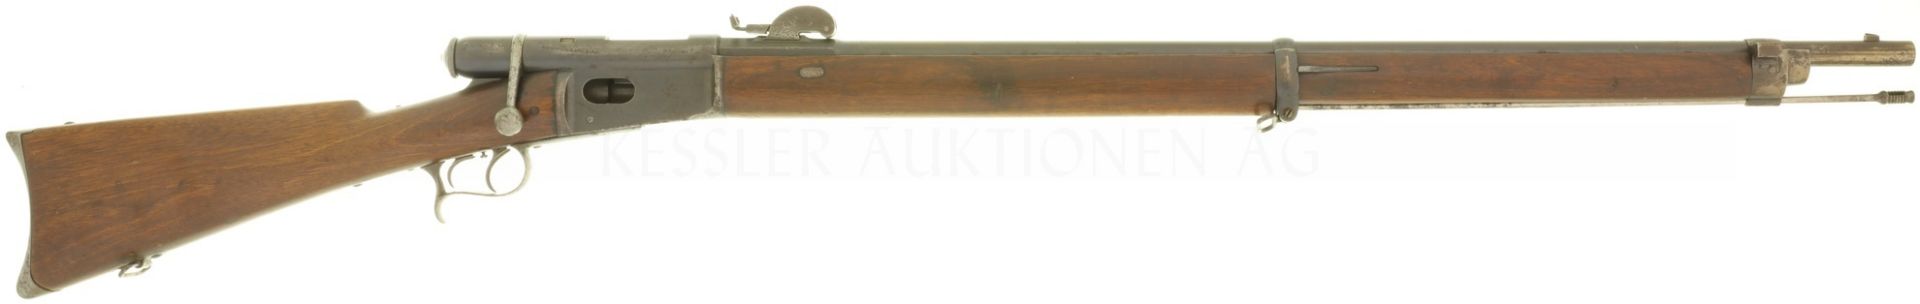 Scharfschützenstutzer, Waffenfabrik Bern, Vetterli M 1881, Kal. 10.4mmRF